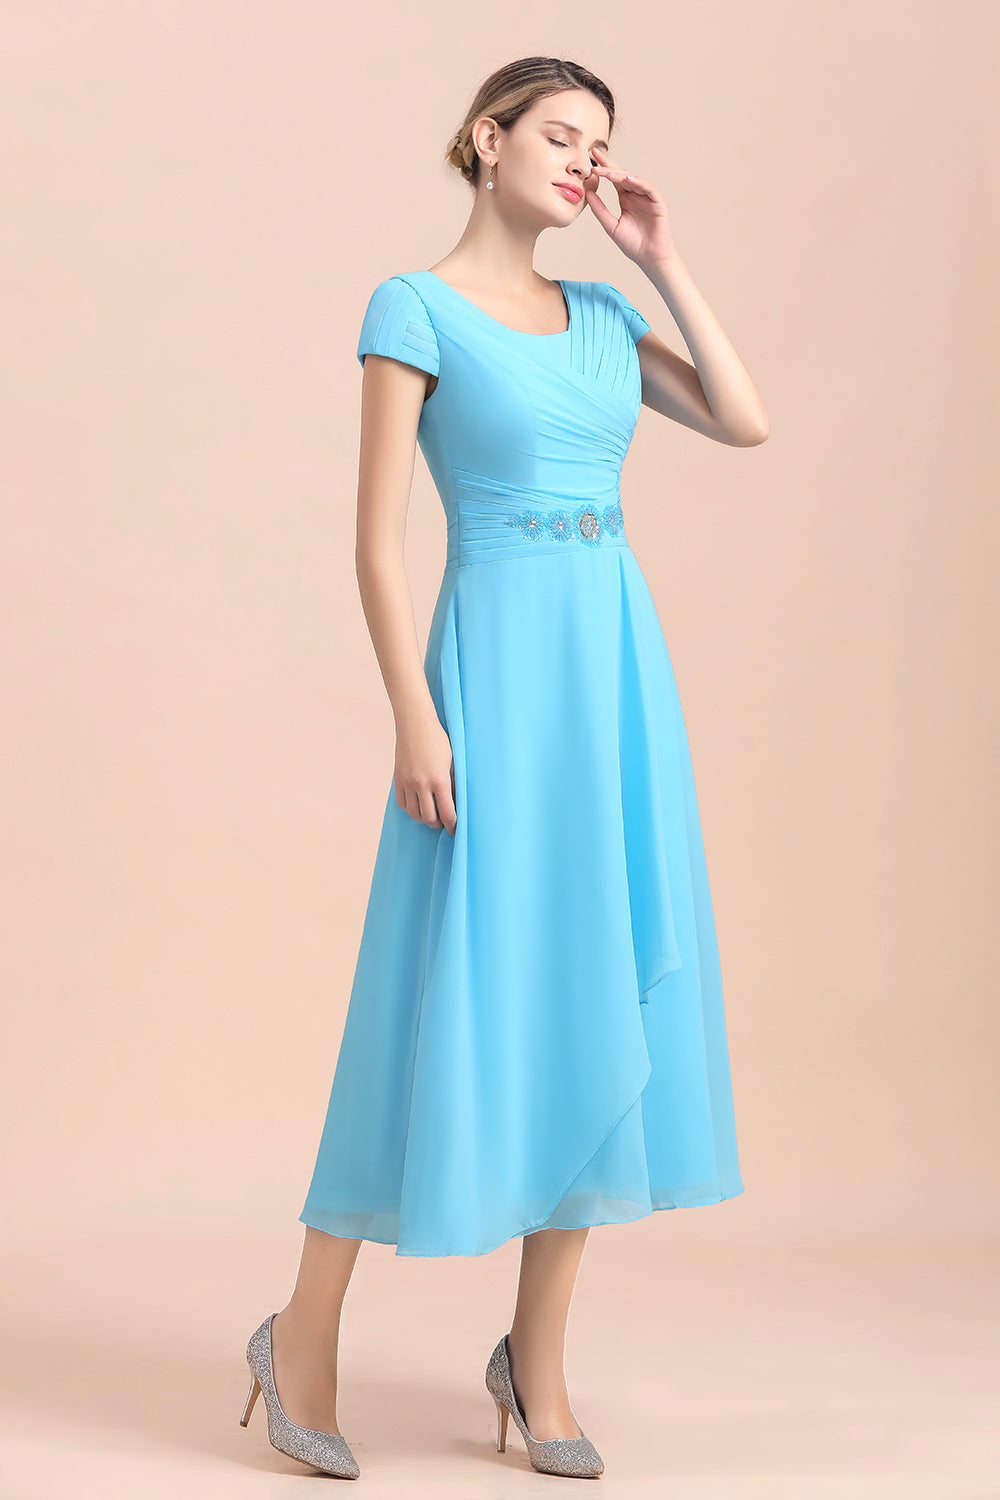 Finden Sie Günstige Brautmutterkleider Kurz Blau online bei babyonlinedress.de. Chiffon Kleider Günstig für Brautmutter online bestellen.